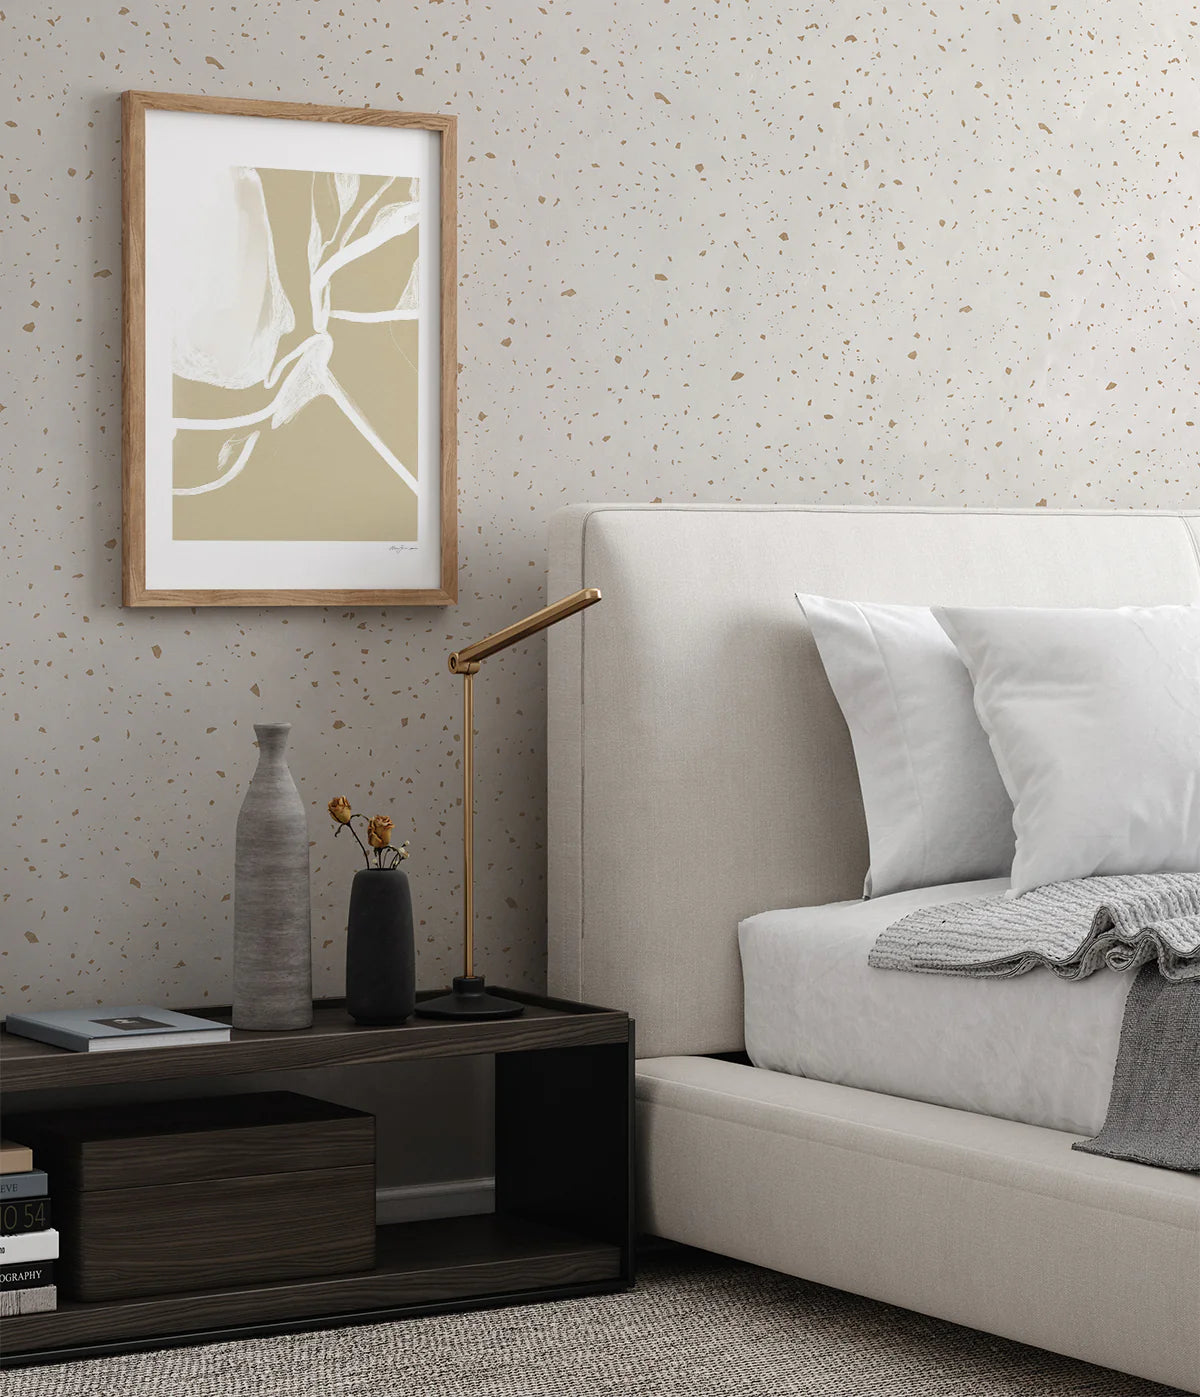 Gold Metallic Confetti Speckles, Pattern Wallpaper in bedroom